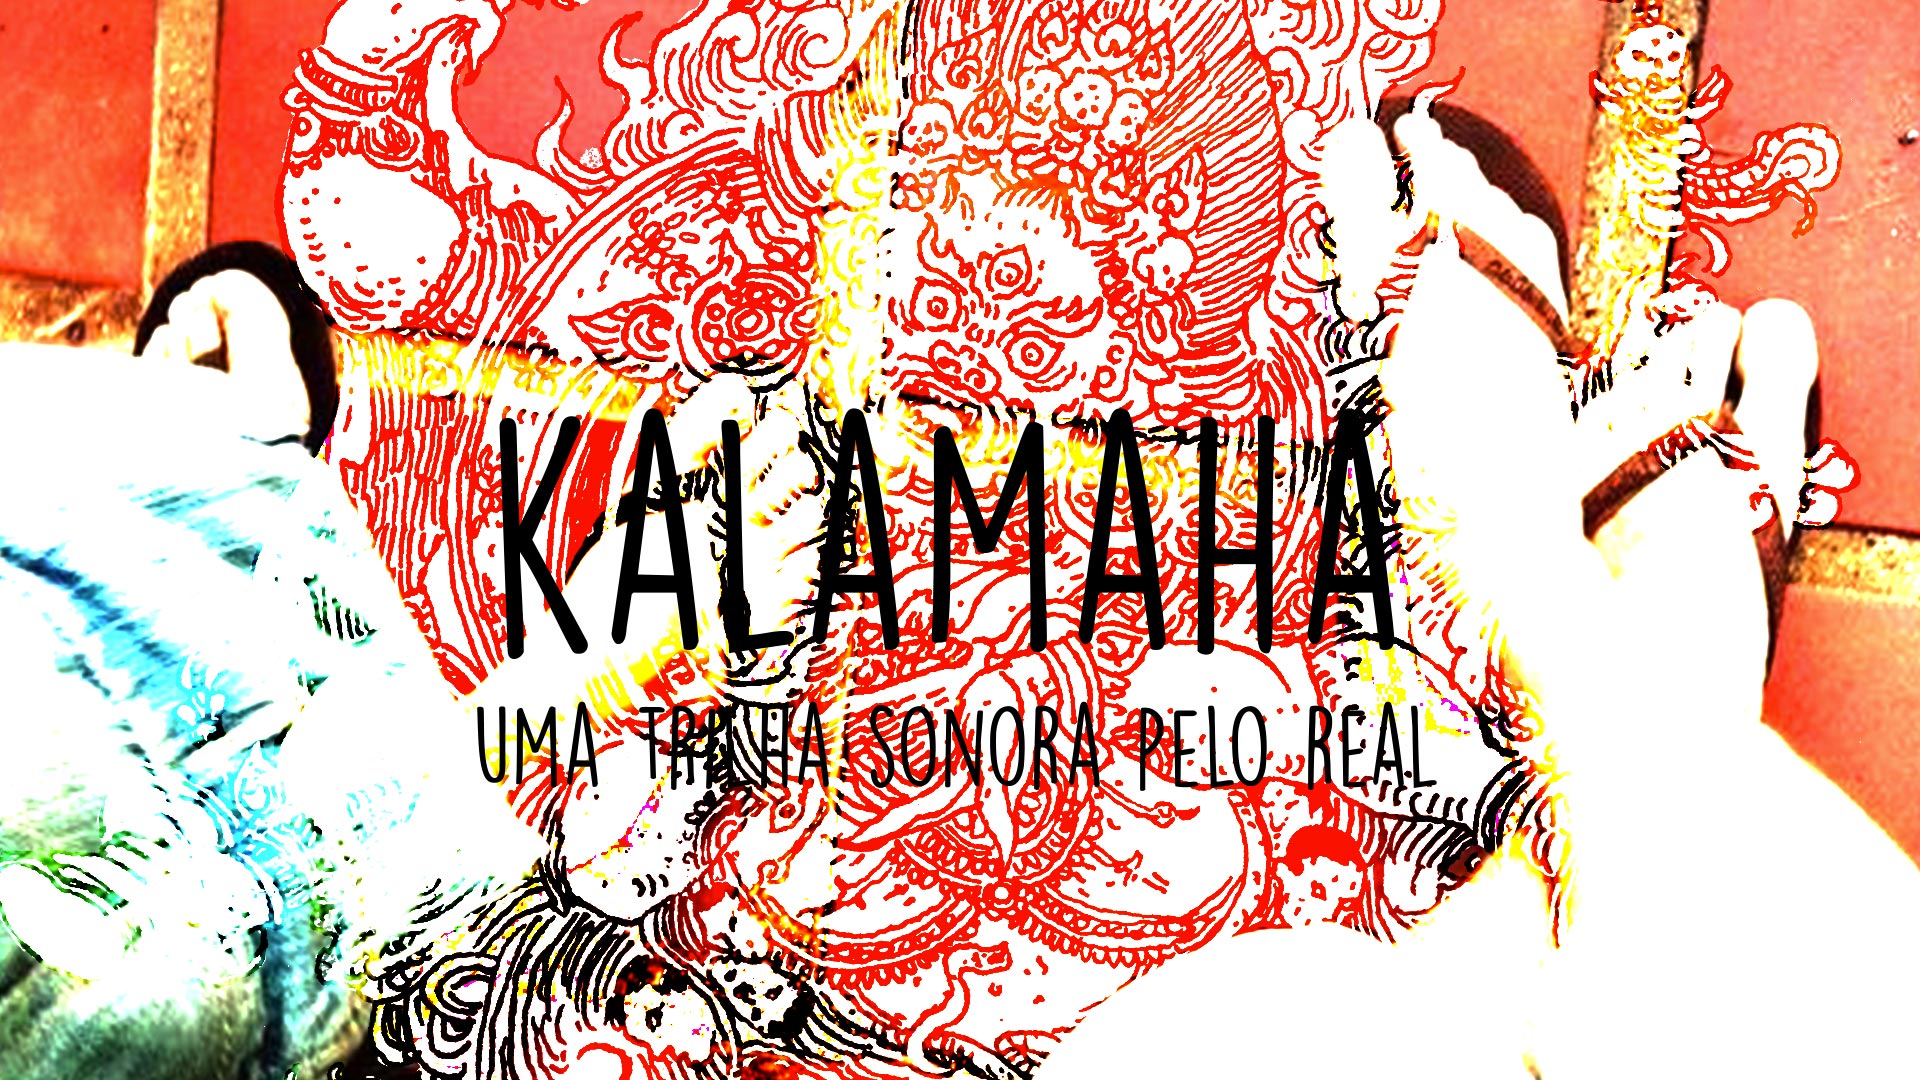 About - Kalamaha